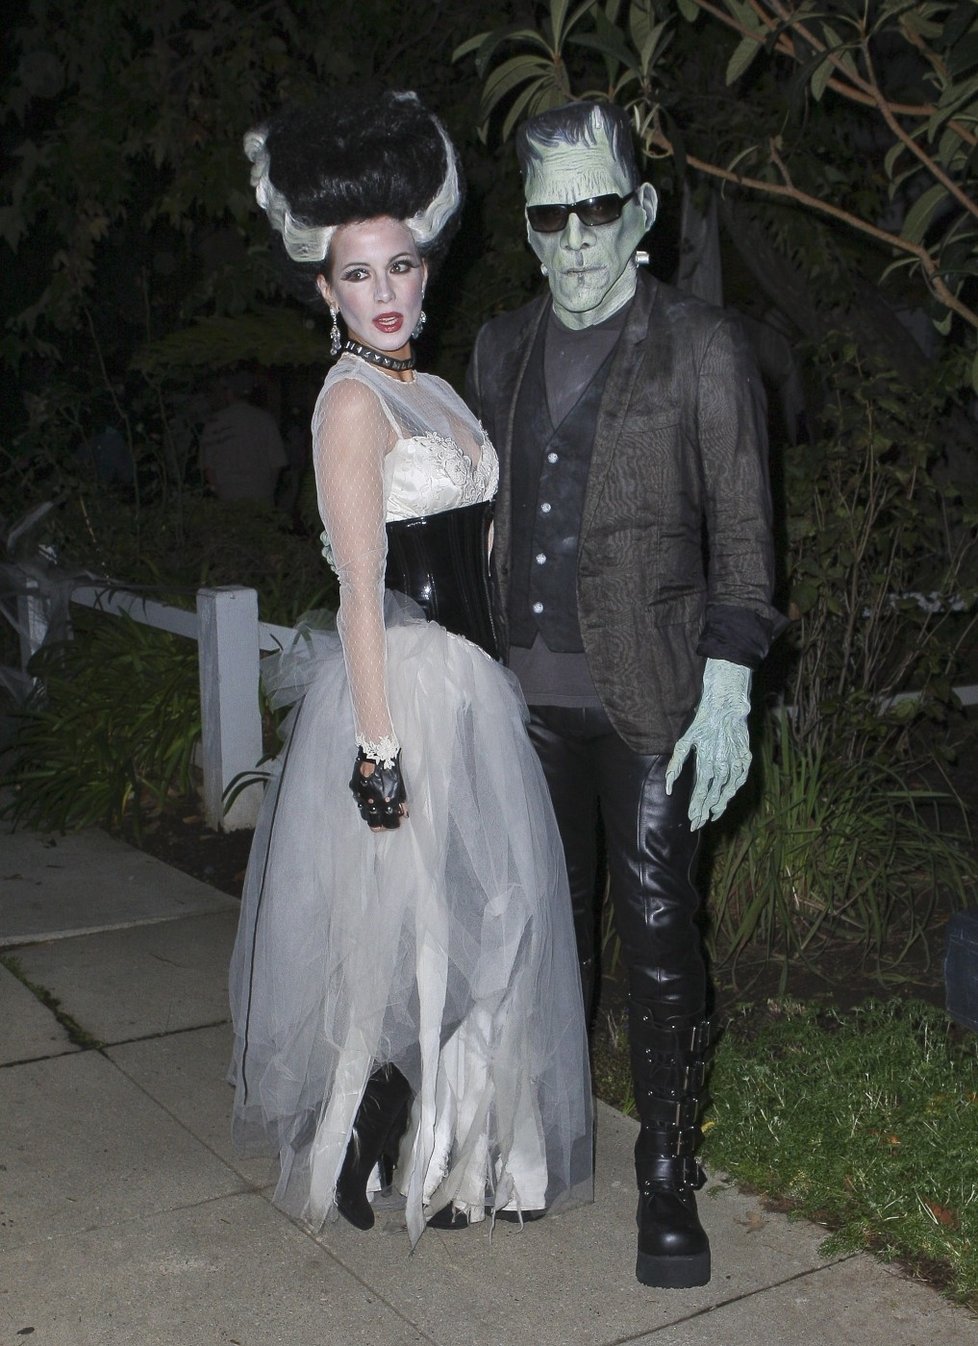 Herečka Kate Beckinsale se svým mužem v šíleném hororovém mundúru